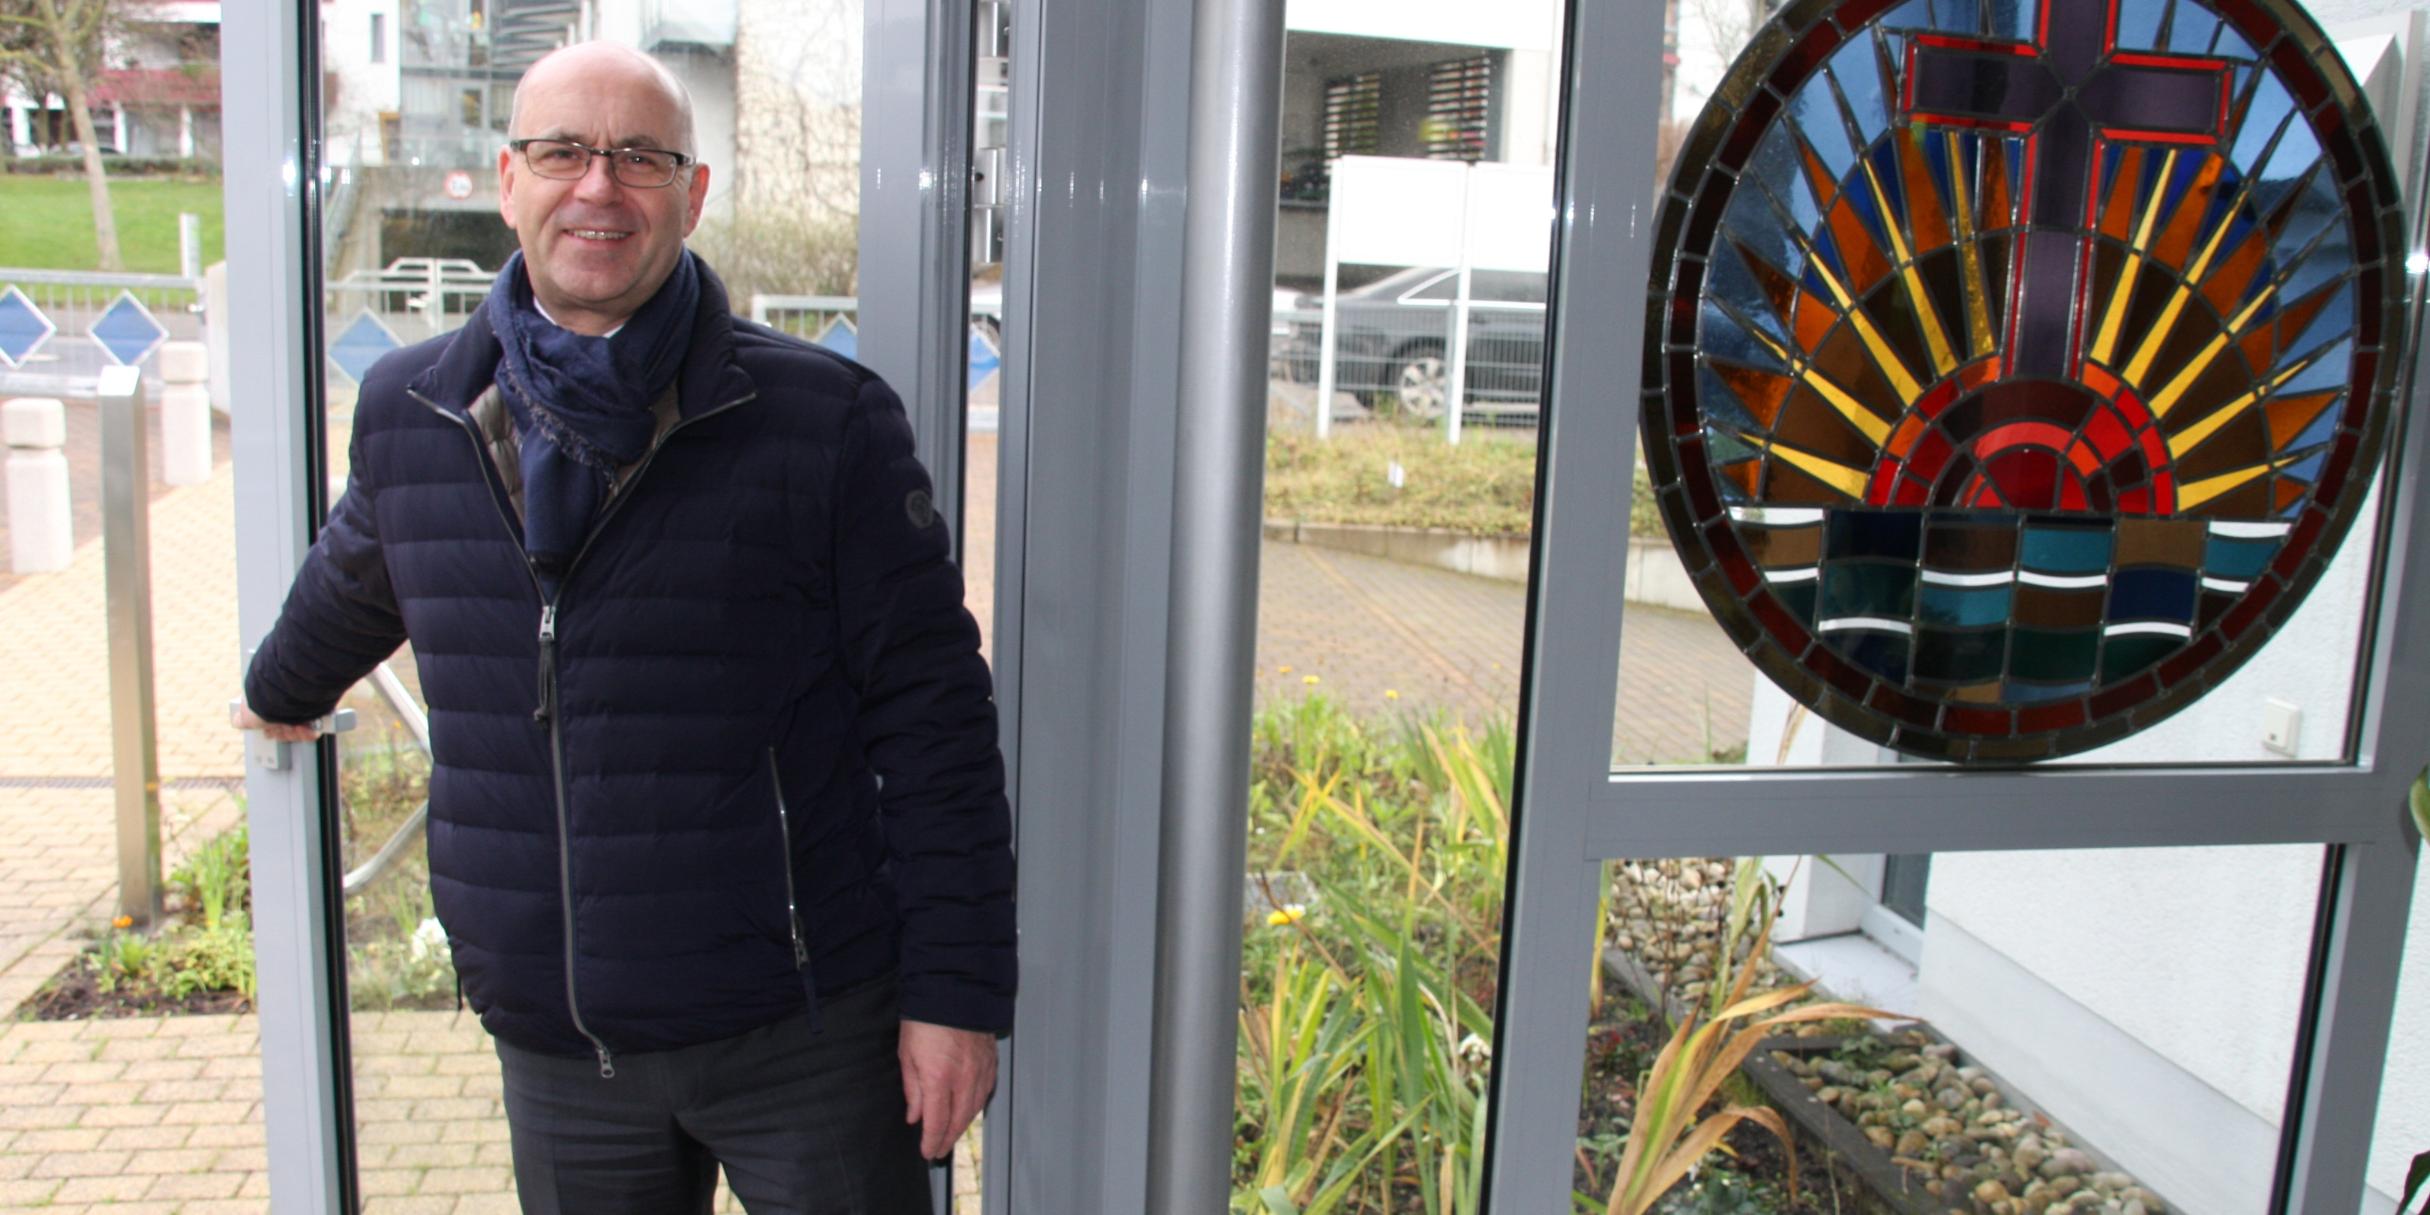 Gemeindeleiter Roger Tech von der Neuapostolischen Kirche, Gemeinde Koblenz, öffnet die Tür für interessierte Gottesdienstbesucher